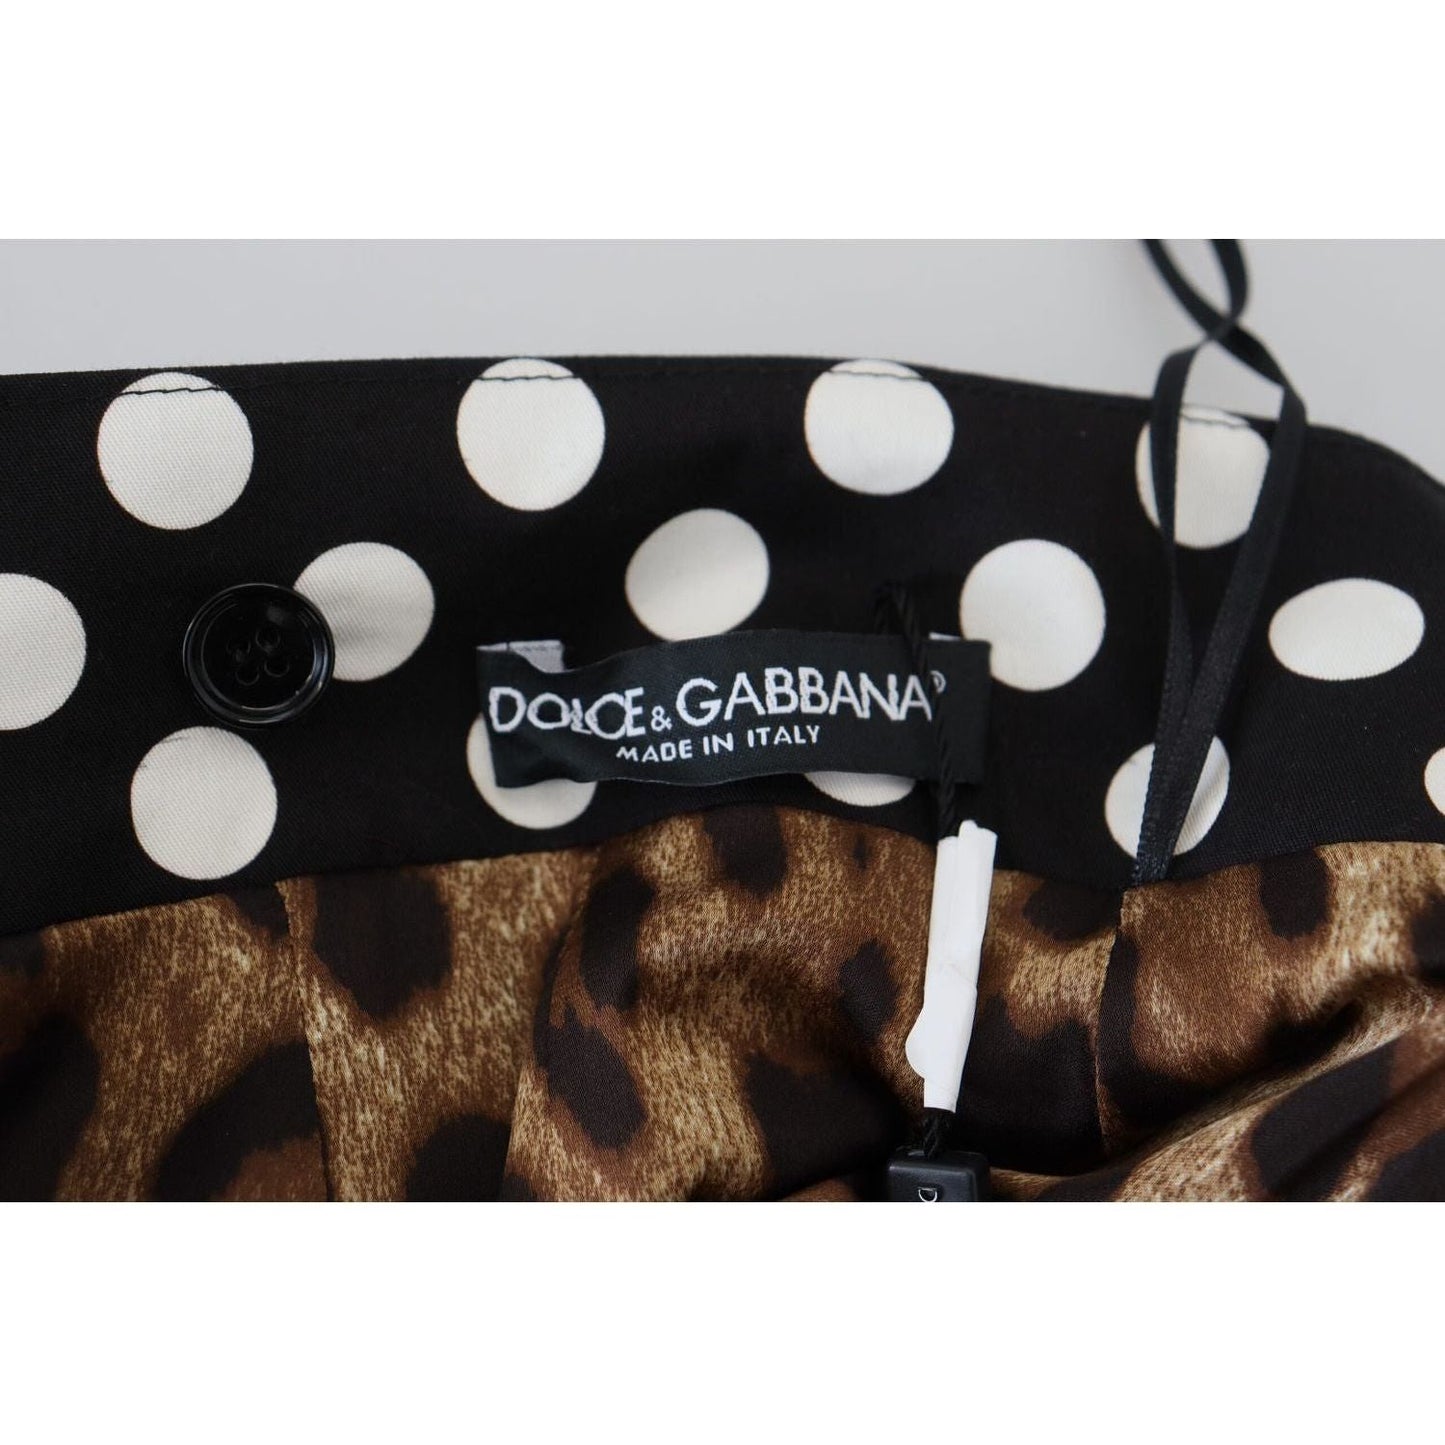 Dolce & Gabbana Chic Multicolor Patchwork Mini Skirt multicolor-majolica-patchwork-mini-skirt